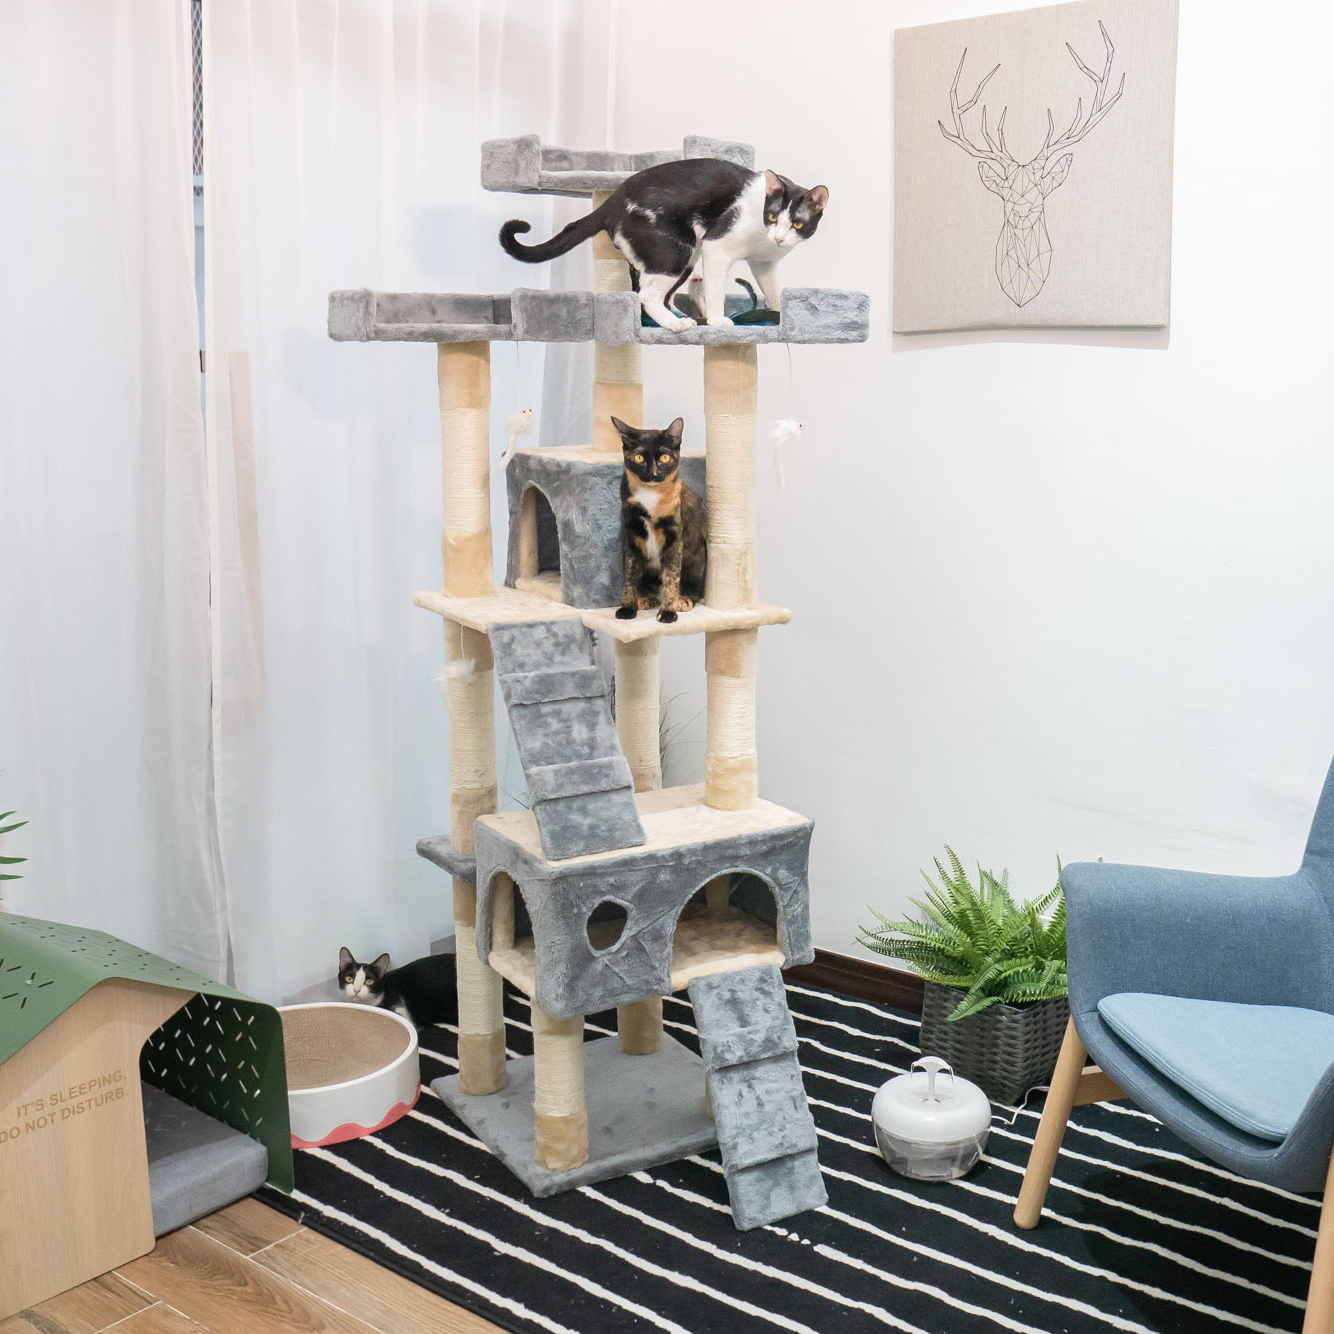 คอนโดแมว บ้านแมว Bongo Cat Tree รุ่น สก็อตติชโฟล์ด 50x50x170 cm.